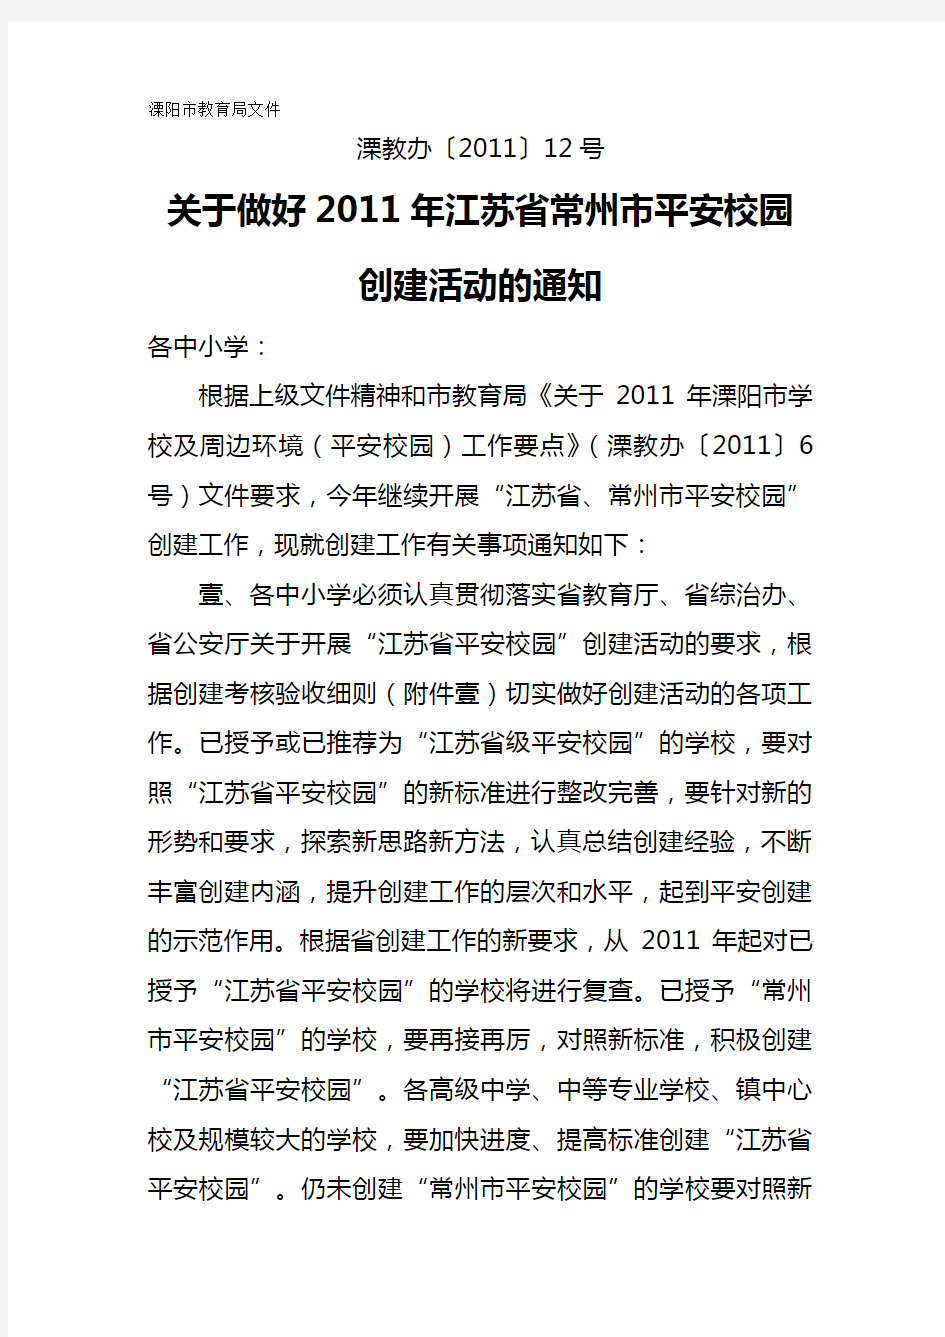 (绩效管理套表)江苏省平安校园创建考核表最新版